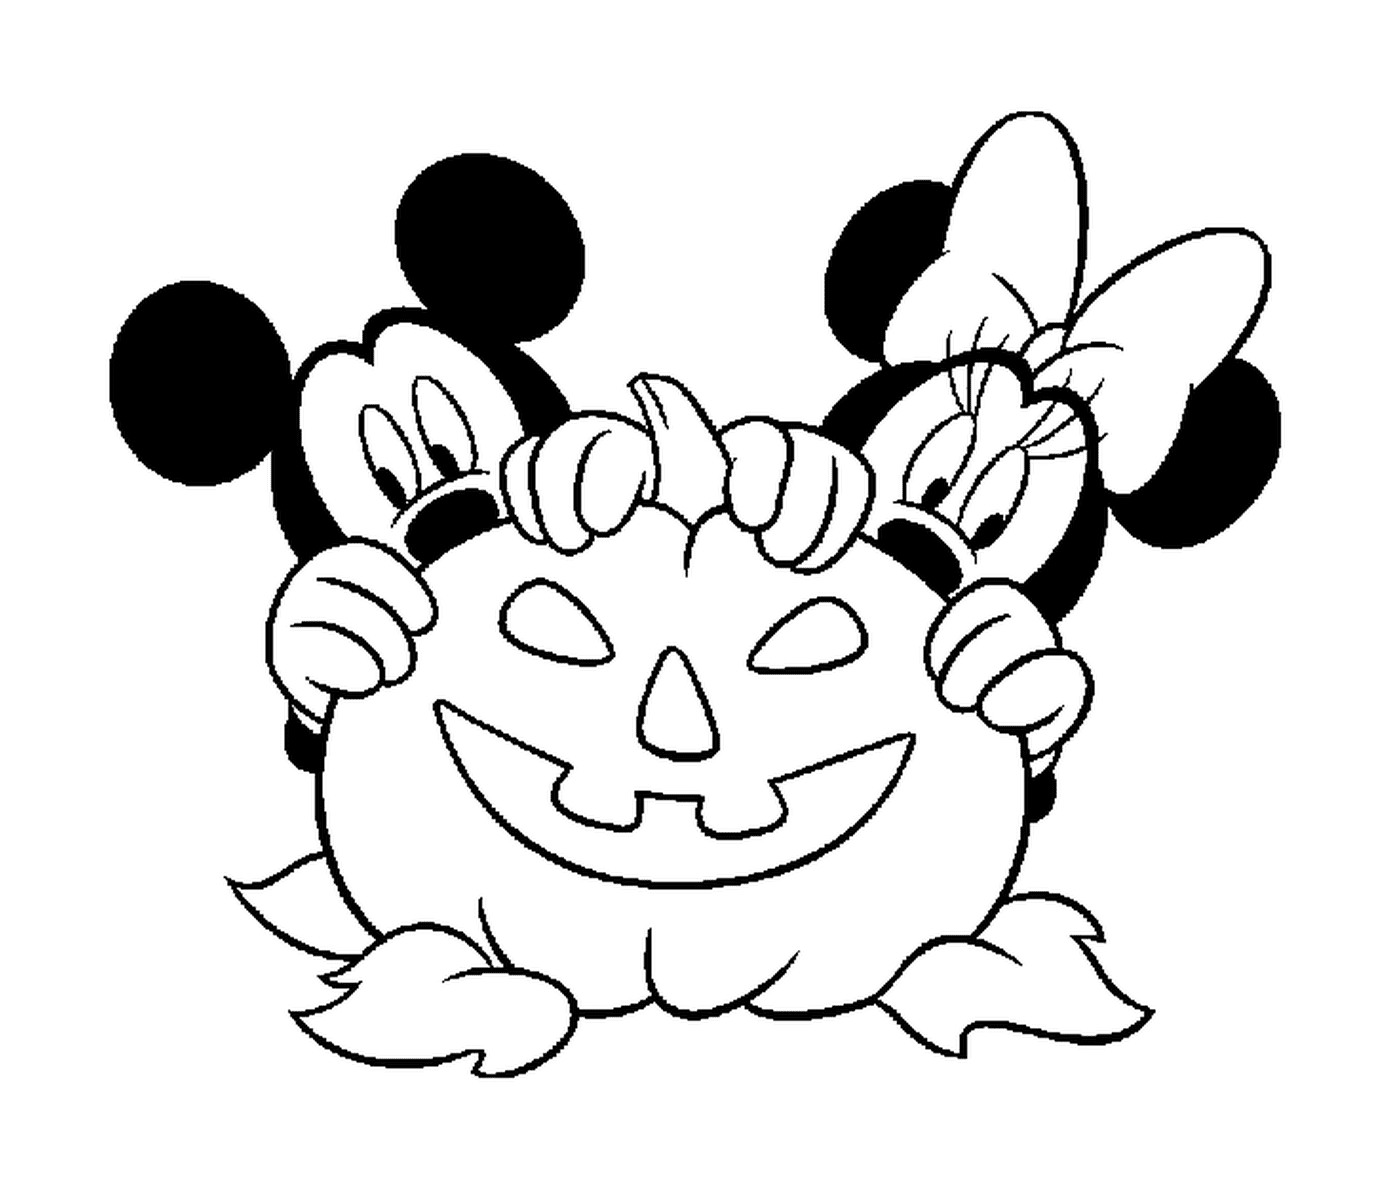  Mickey y Minnie se esconden detrás de una calabaza Disney 